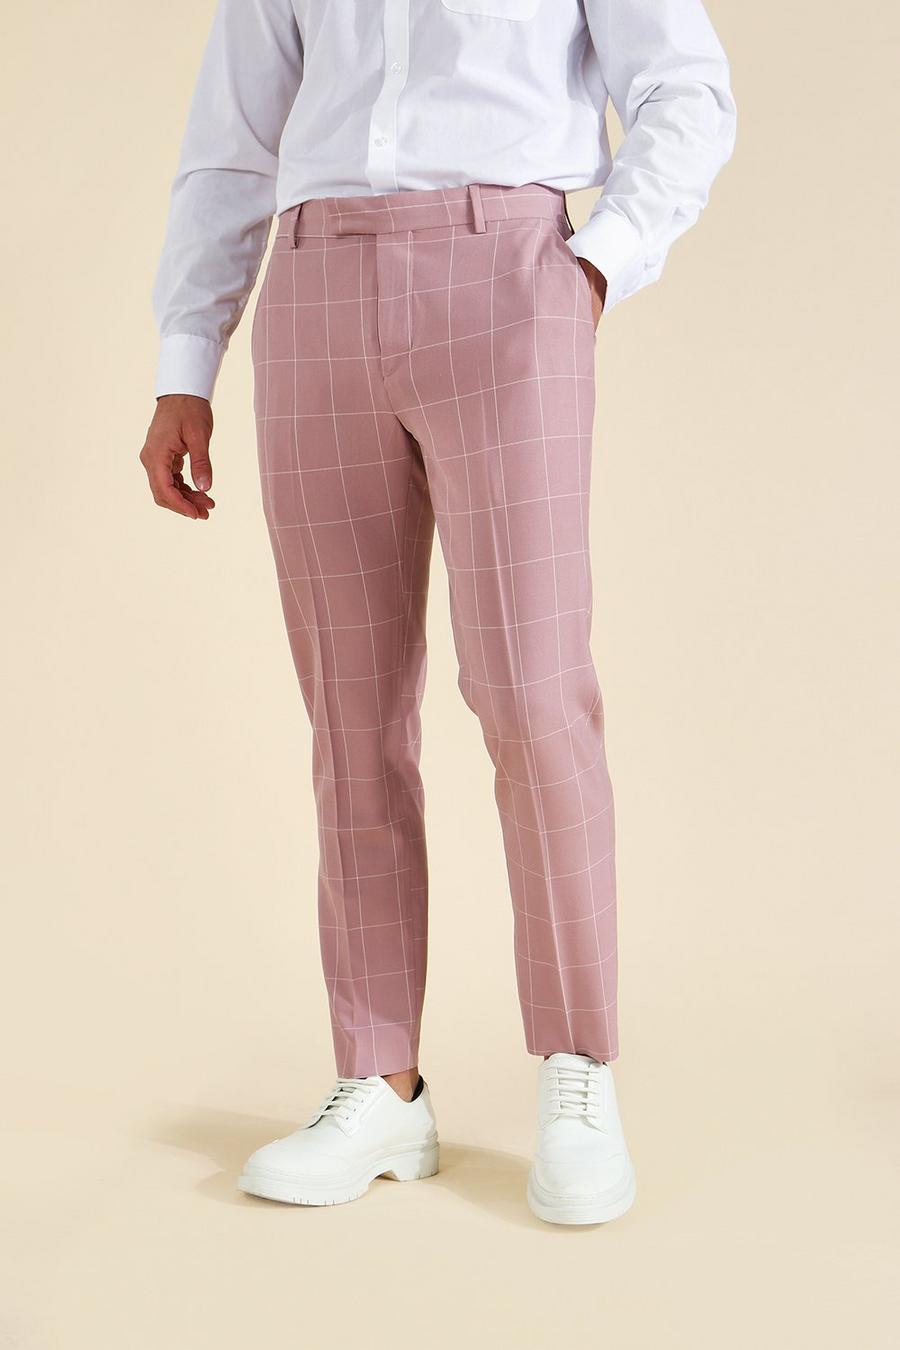 Pantaloni alla caviglia a quadri grandi Skinny Fit, taglio sartoriale, Pink rosa image number 1